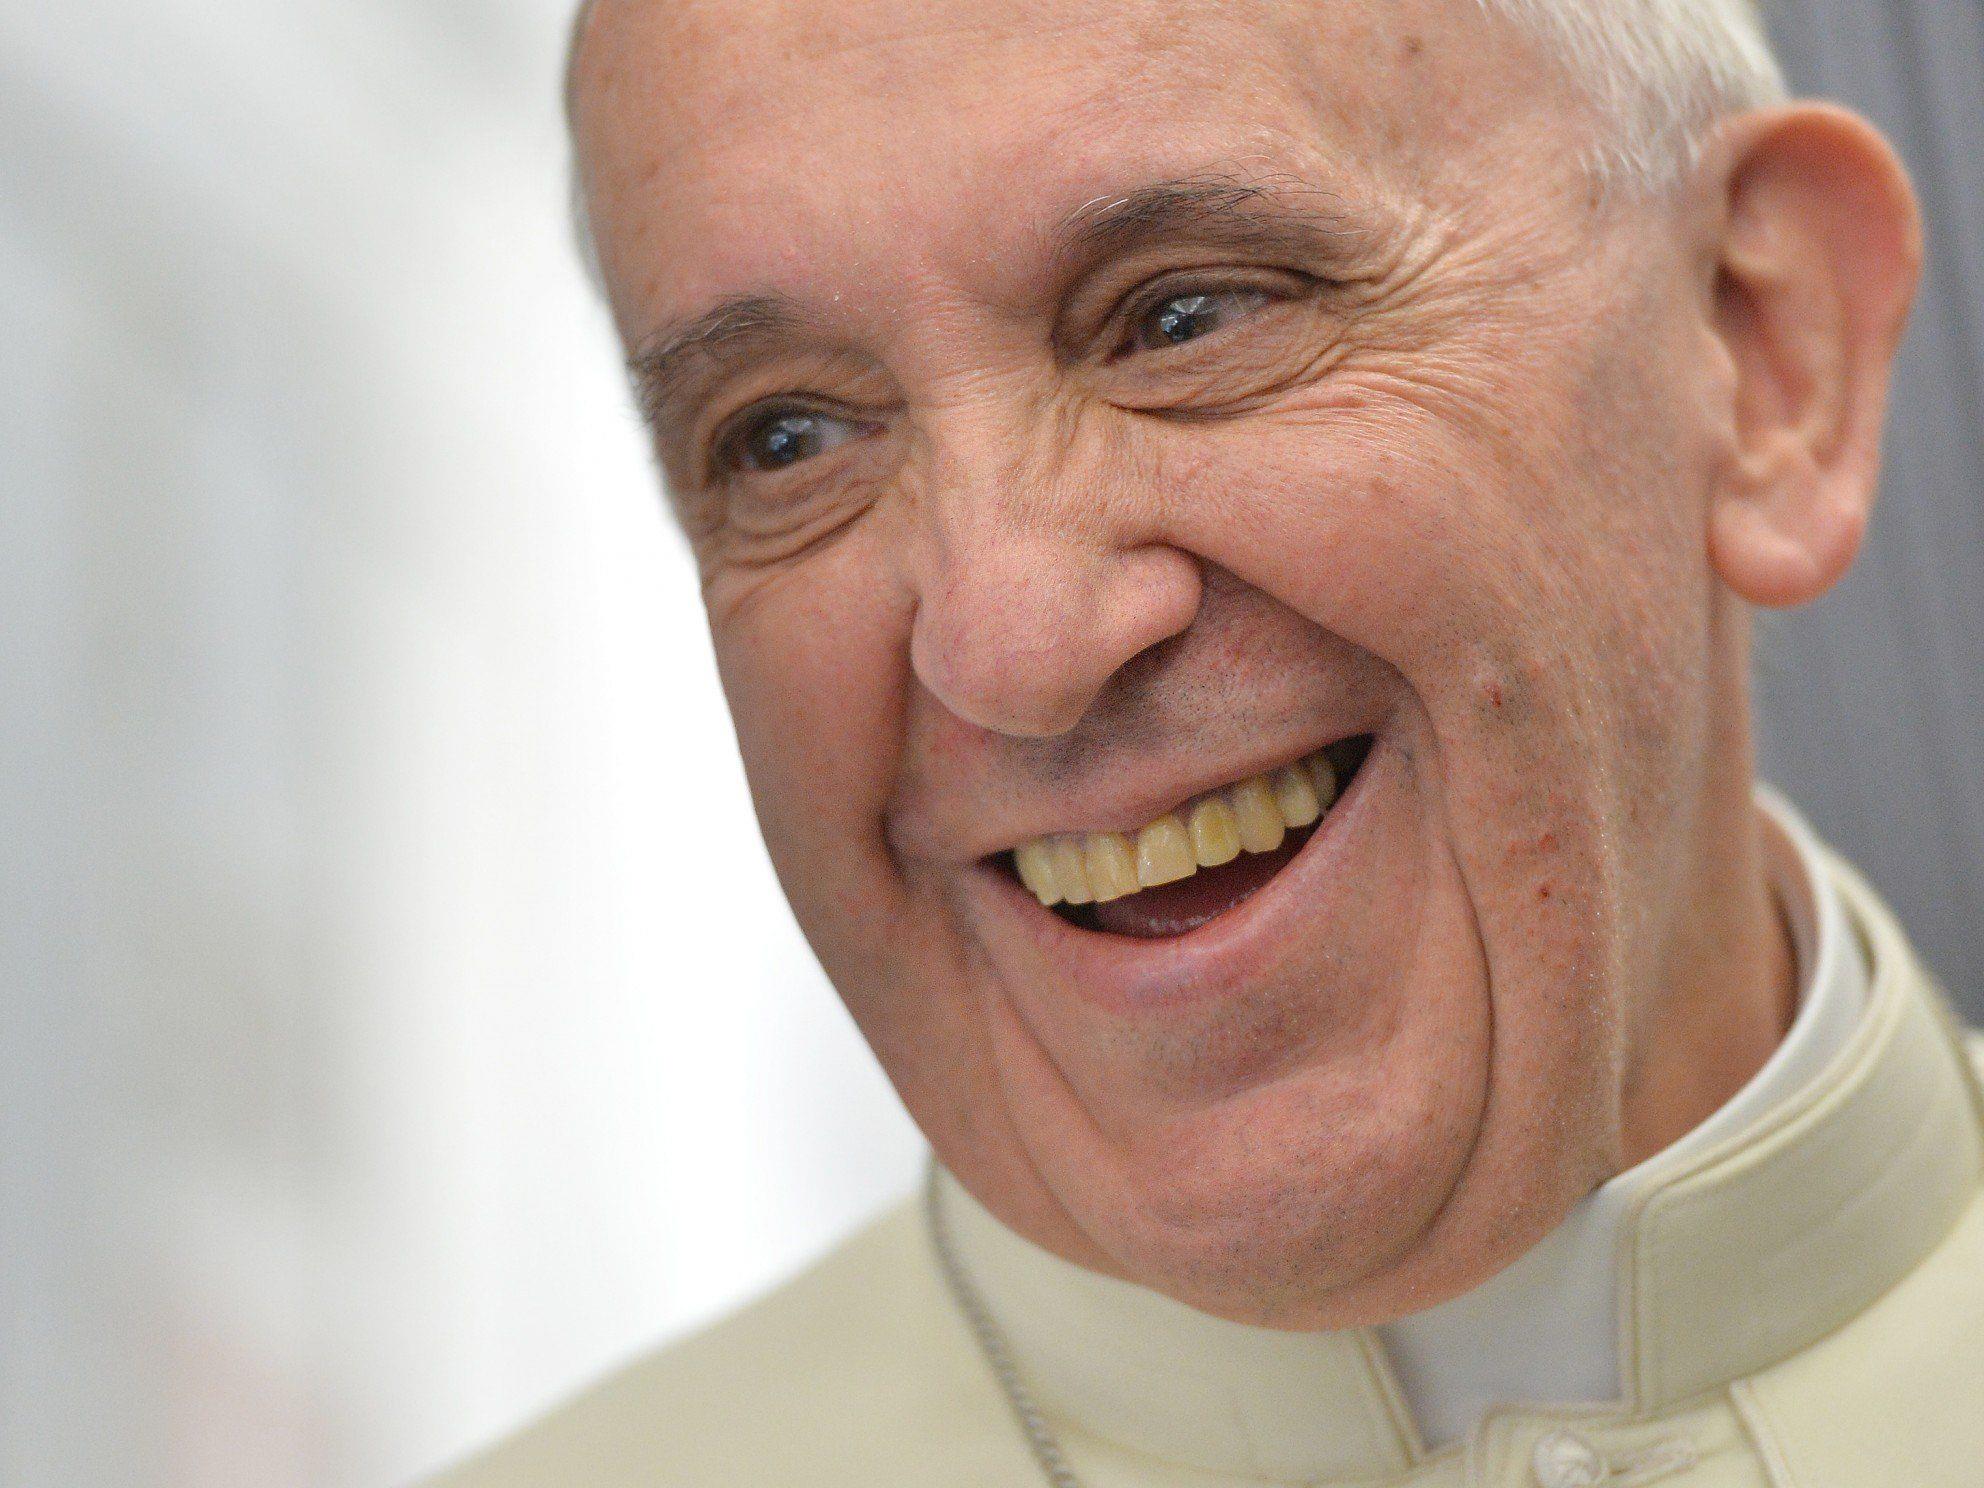 Papst Franziskus verbrachte die letzte Woche in Rio de Janeiro, um den Weltjugendtag zu feiern.